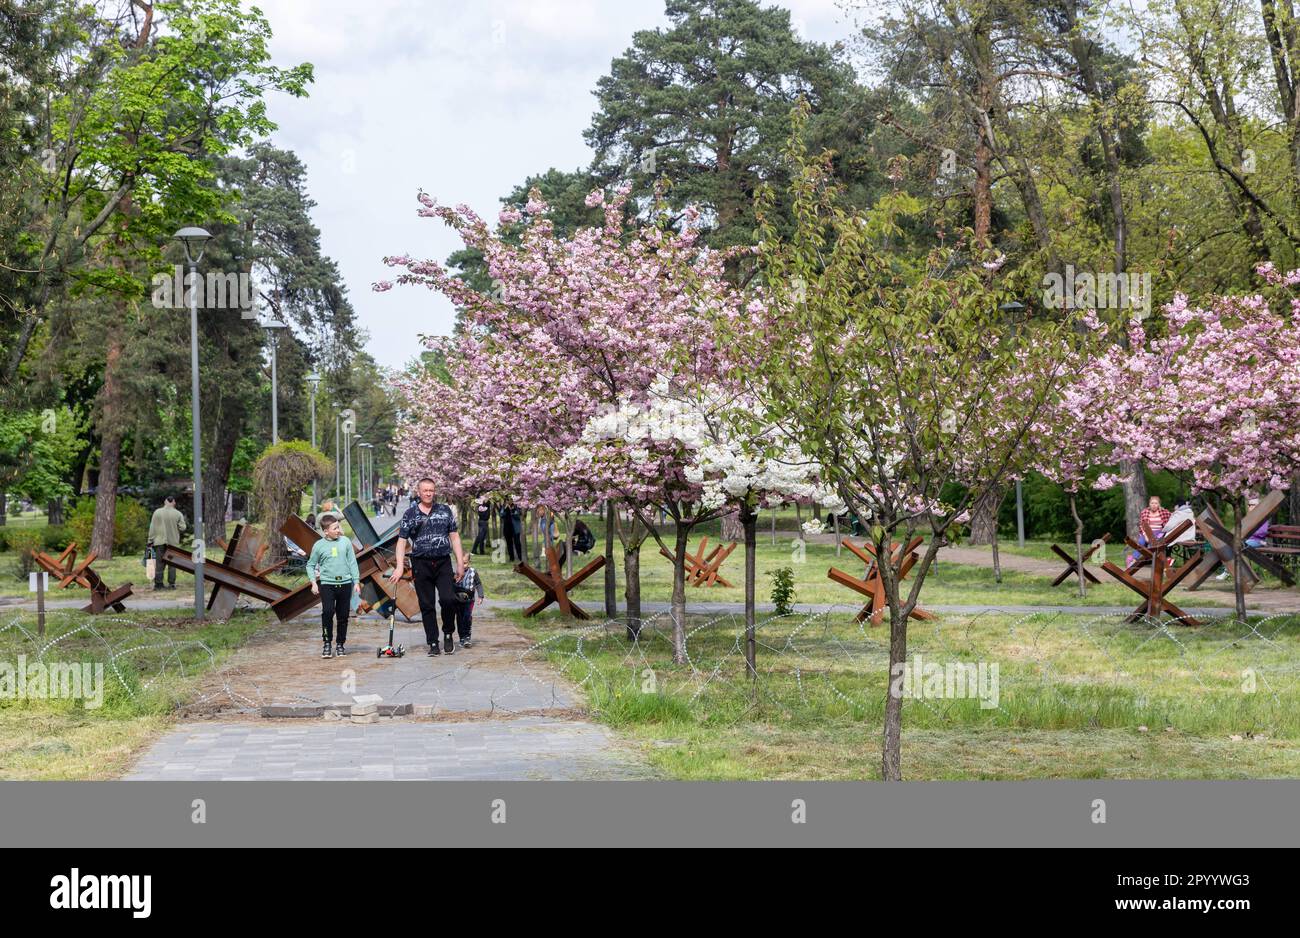 4 mai 2023, Kiev, Ukraine: Les gens se promenant dans le parc de Kyoto à Kiev en appréciant les fleurs des sakura et en regardant les barricades et les fortifications. Sakura s'est épanouie dans le parc de Kyoto à Kiev. Kyoto Park à Kiev est une petite île japonaise au milieu de la capitale ukrainienne. C'est la plus longue allée de sakura en Ukraine, d'environ un kilomètre de long, a été plantée, les arbres Sakura ne fleurissent pas pendant longtemps - à peine deux semaines de la fin avril au début mai. Le parc de Kyoto était le site de la ligne de défense de Kiev et il y a de nombreuses fortifications. (Credit image: © Mykhaylo Palinchak/SOPA Images via ZUMA Press Wire Banque D'Images